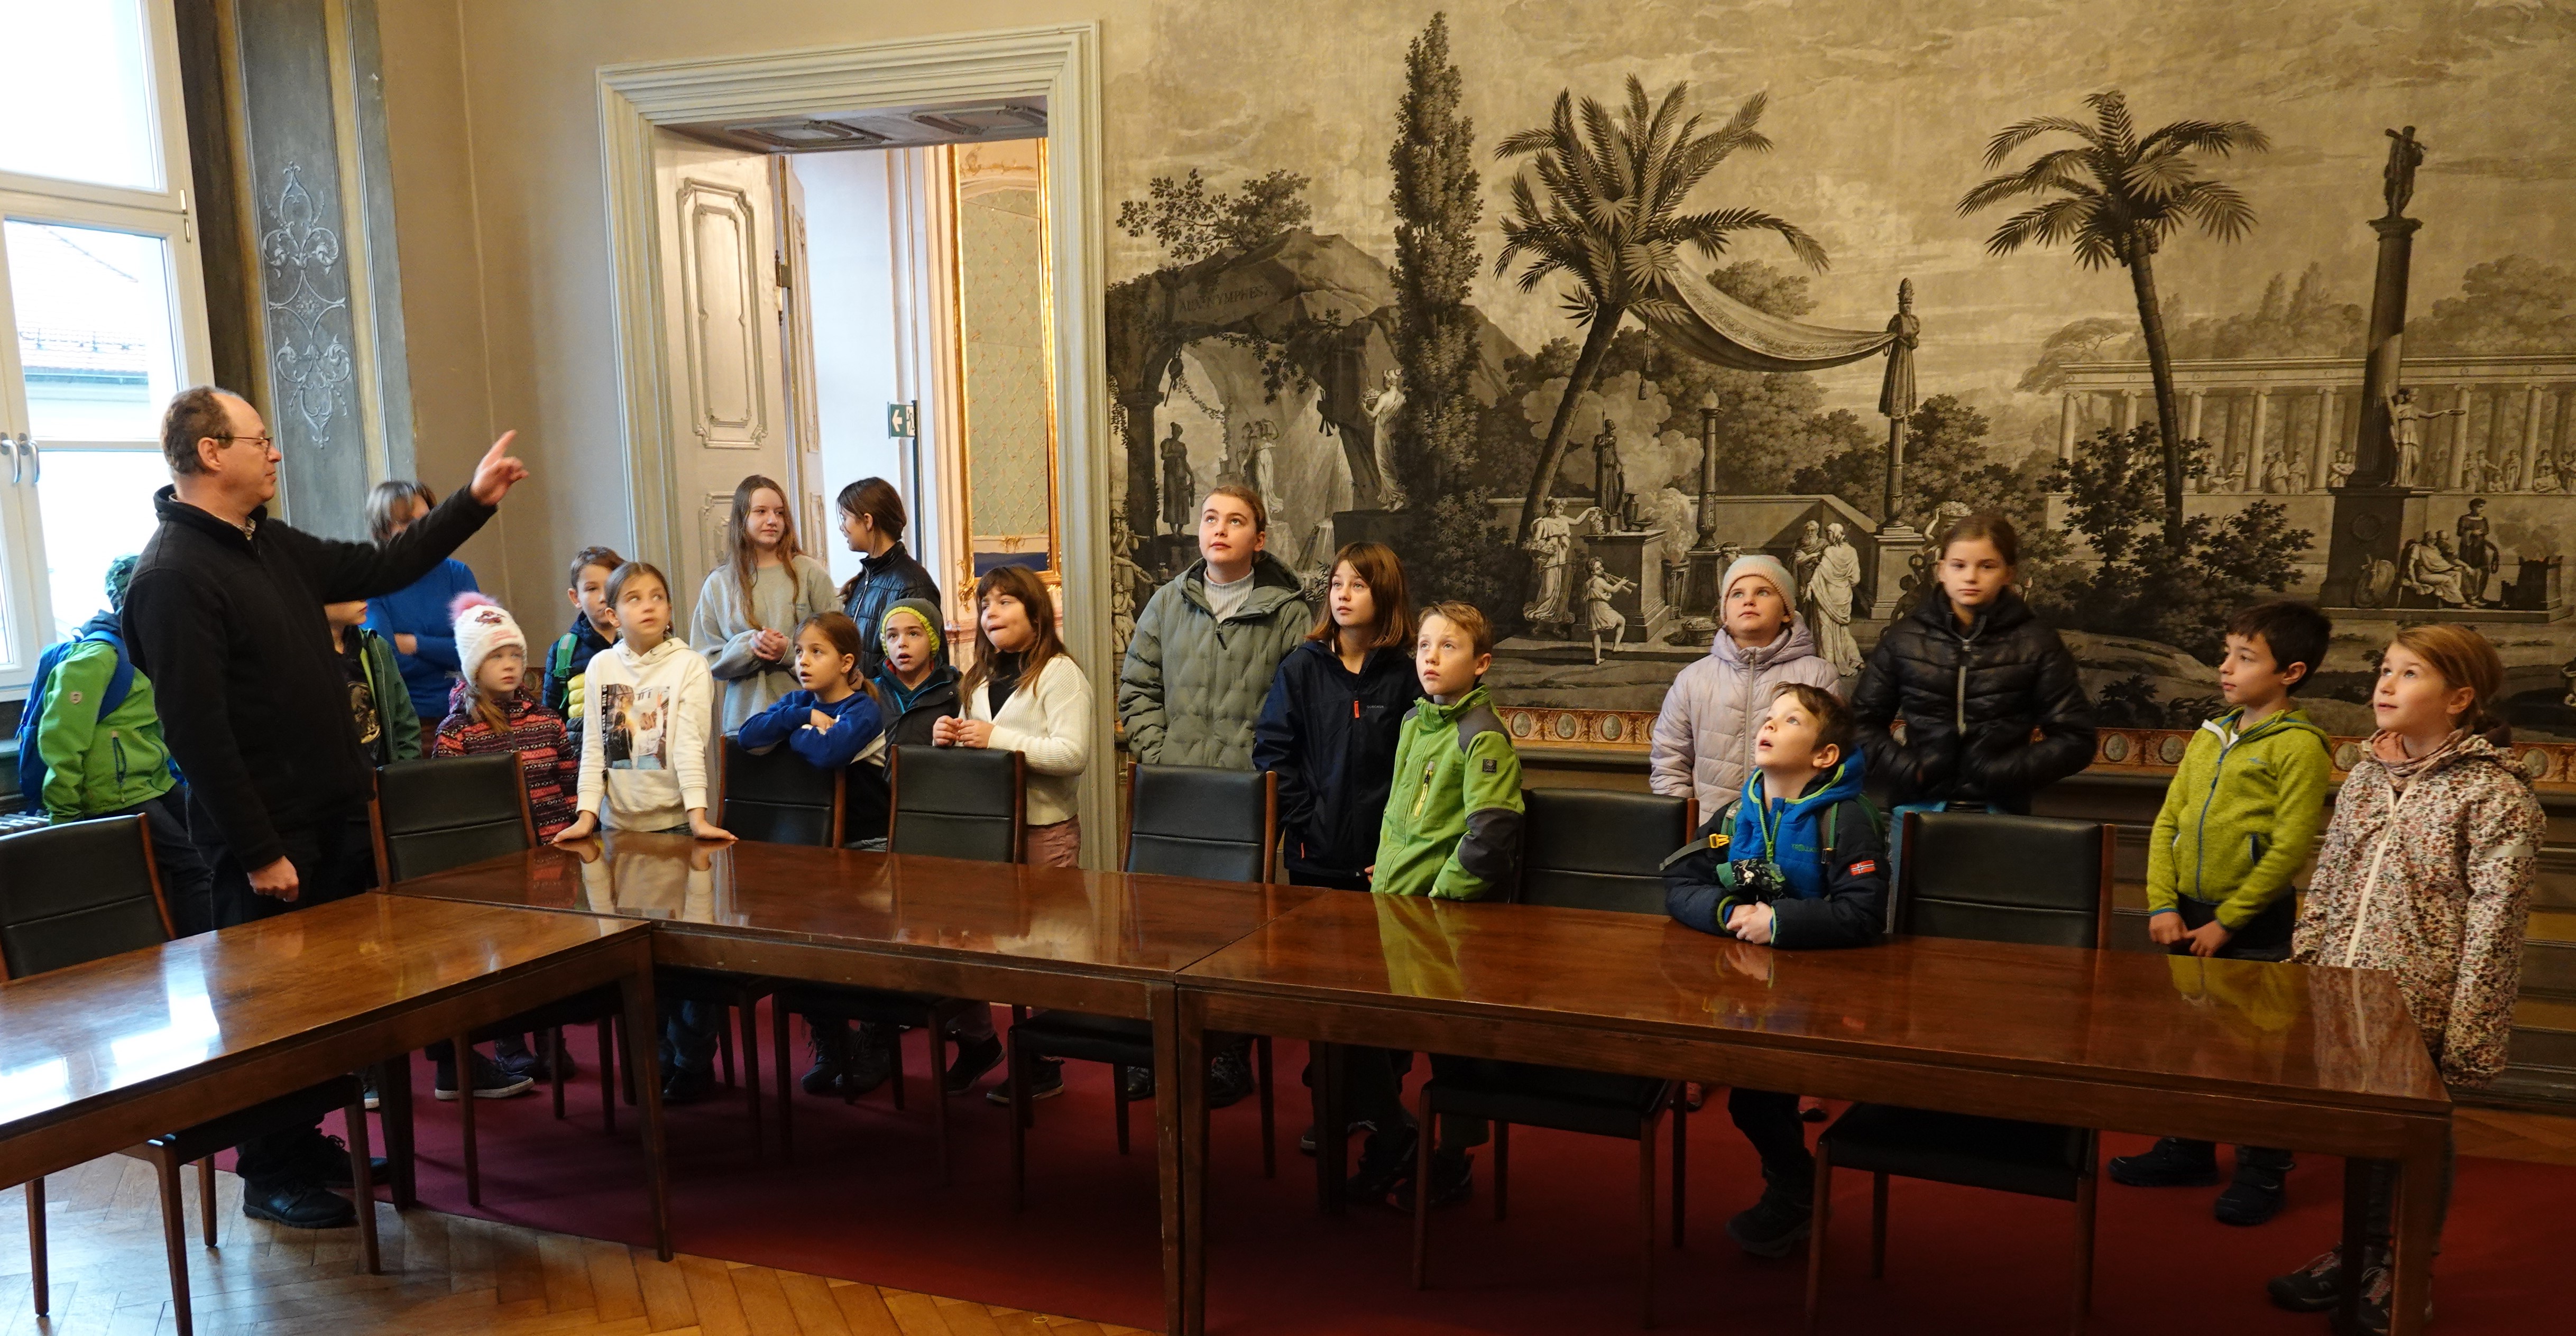 Kinder von Mitarbeiterinnen und Mitarbeitern des Landratsamts Eichstätt erhielten von Jürgen Graf (links) eine kleine Führung durch die Residenz mit Spiegelsaal, Tapetenzimmer (im Bild) und Treppenhaus.